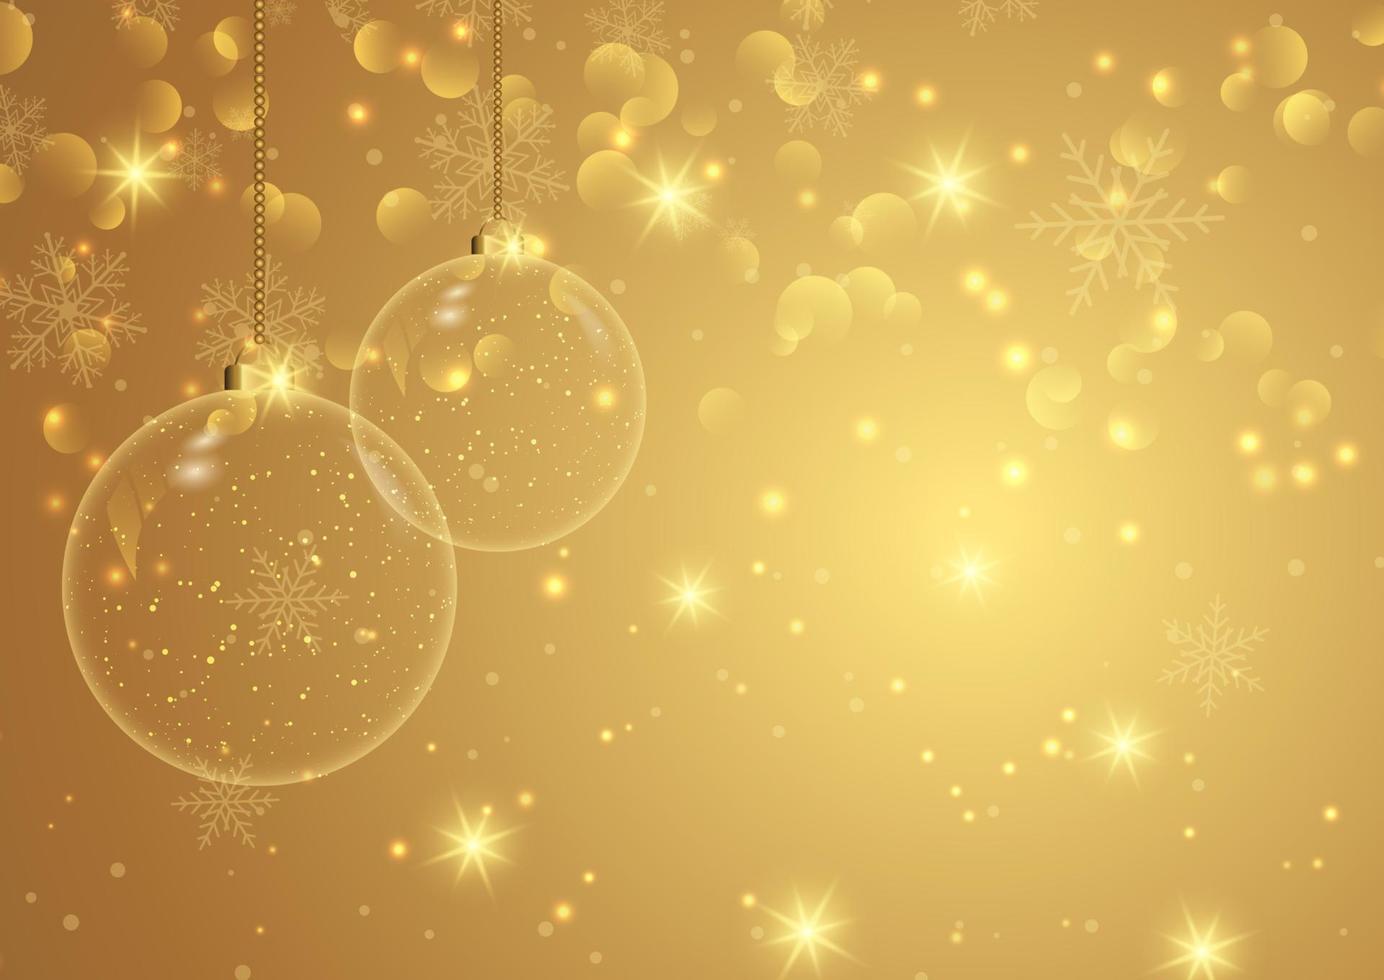 goldener weihnachtshintergrund mit hängenden kugeln vektor